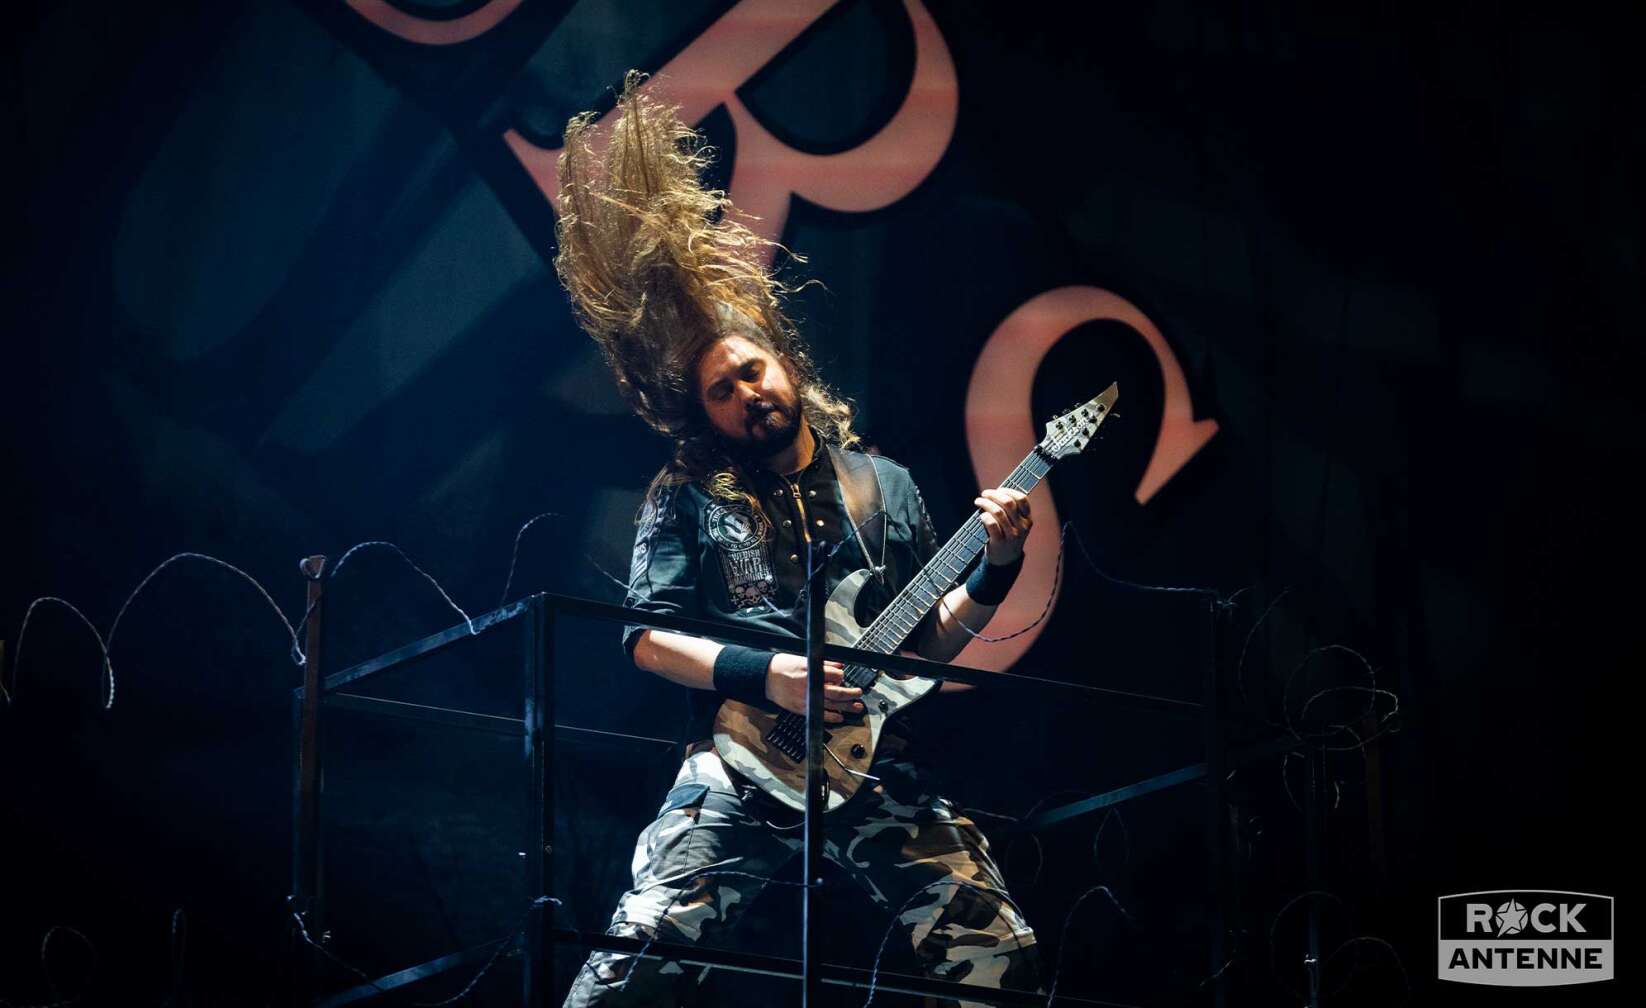 Bild vom Sabaton-Konzert, Chirs Rörland schwingt seine Haare bem Headbangen